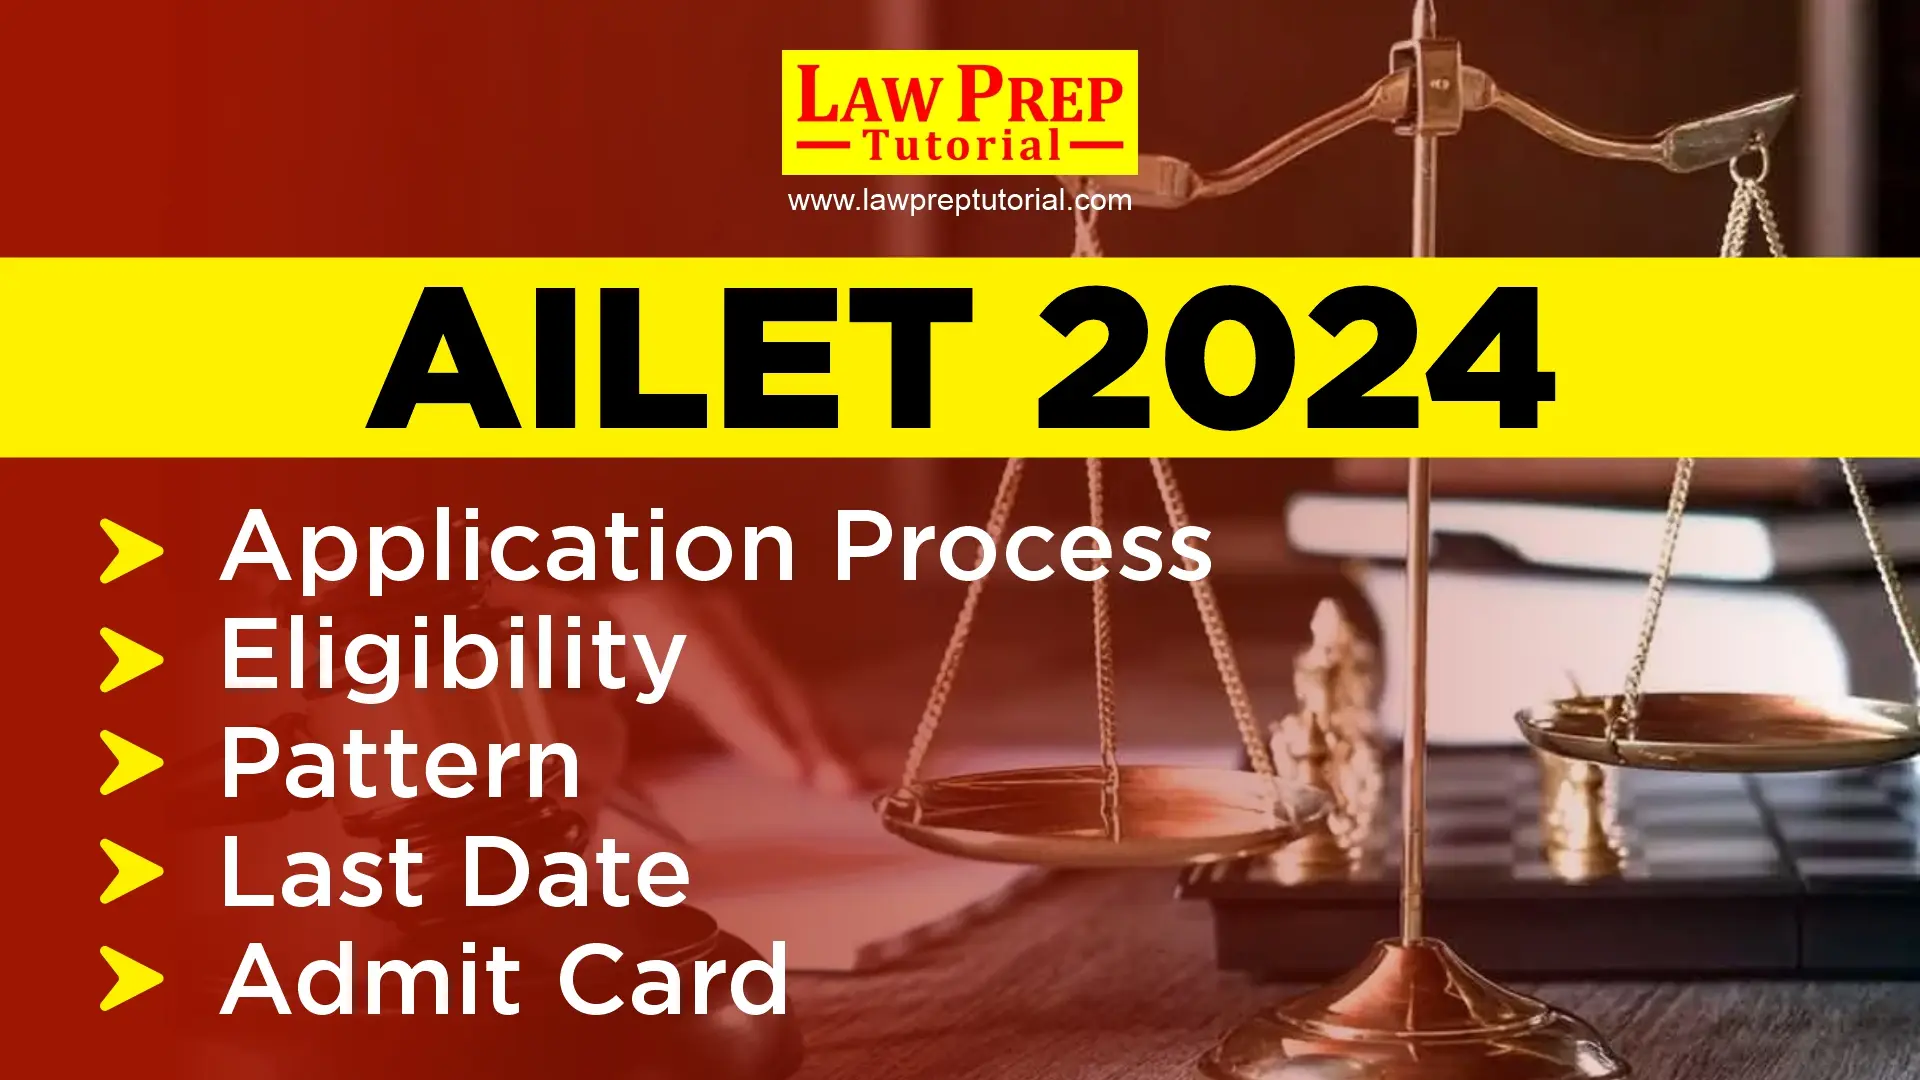 AILET 2024 Application Process